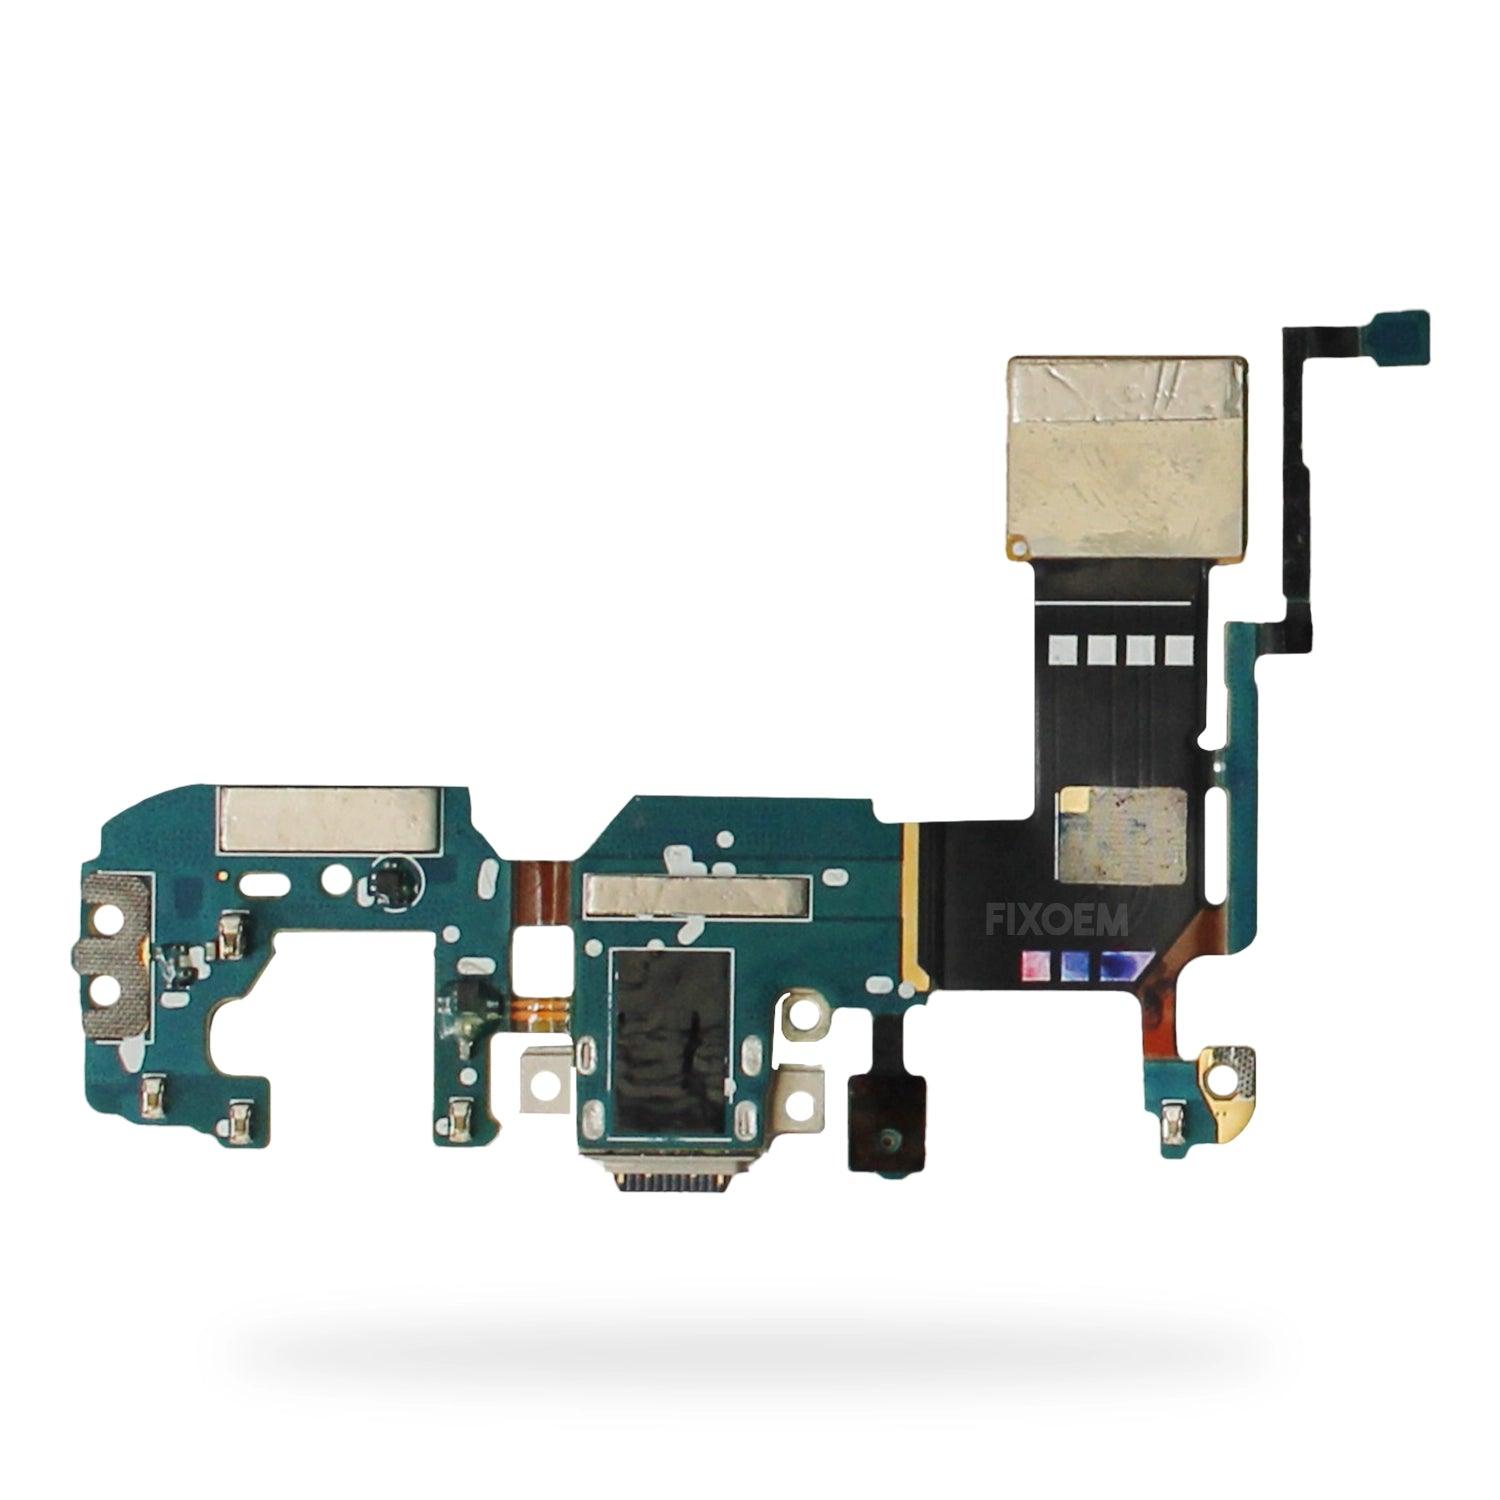 Centro Carga Samsung S8 Plus Sm-G955. a solo $ 150.00 Refaccion y puestos celulares, refurbish y microelectronica.- FixOEM